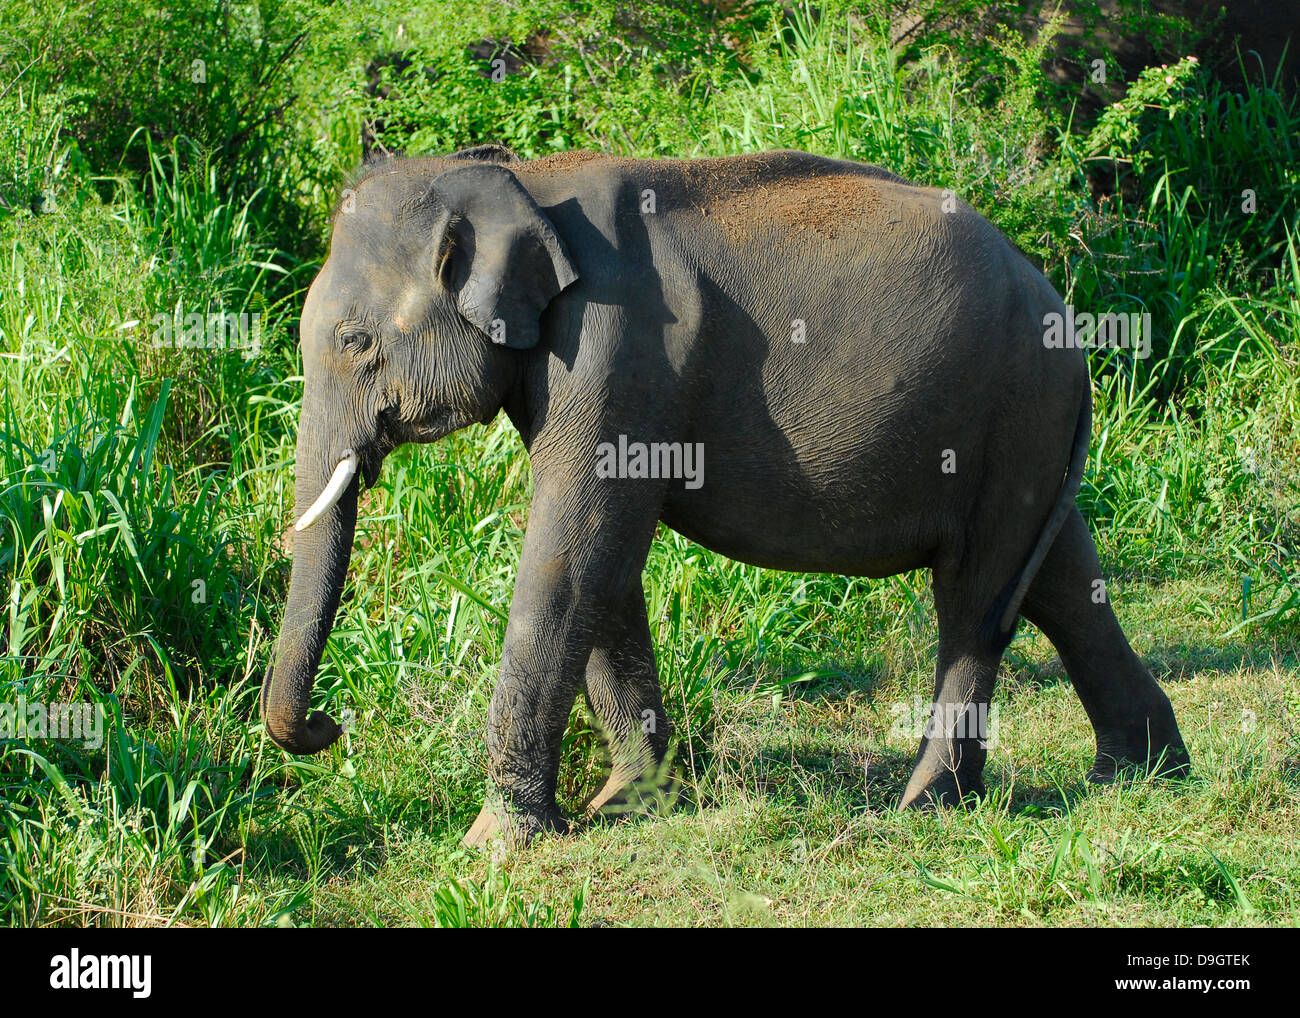 Elephant in Uda Walawe National Park, Sri Lanka Stock Photo